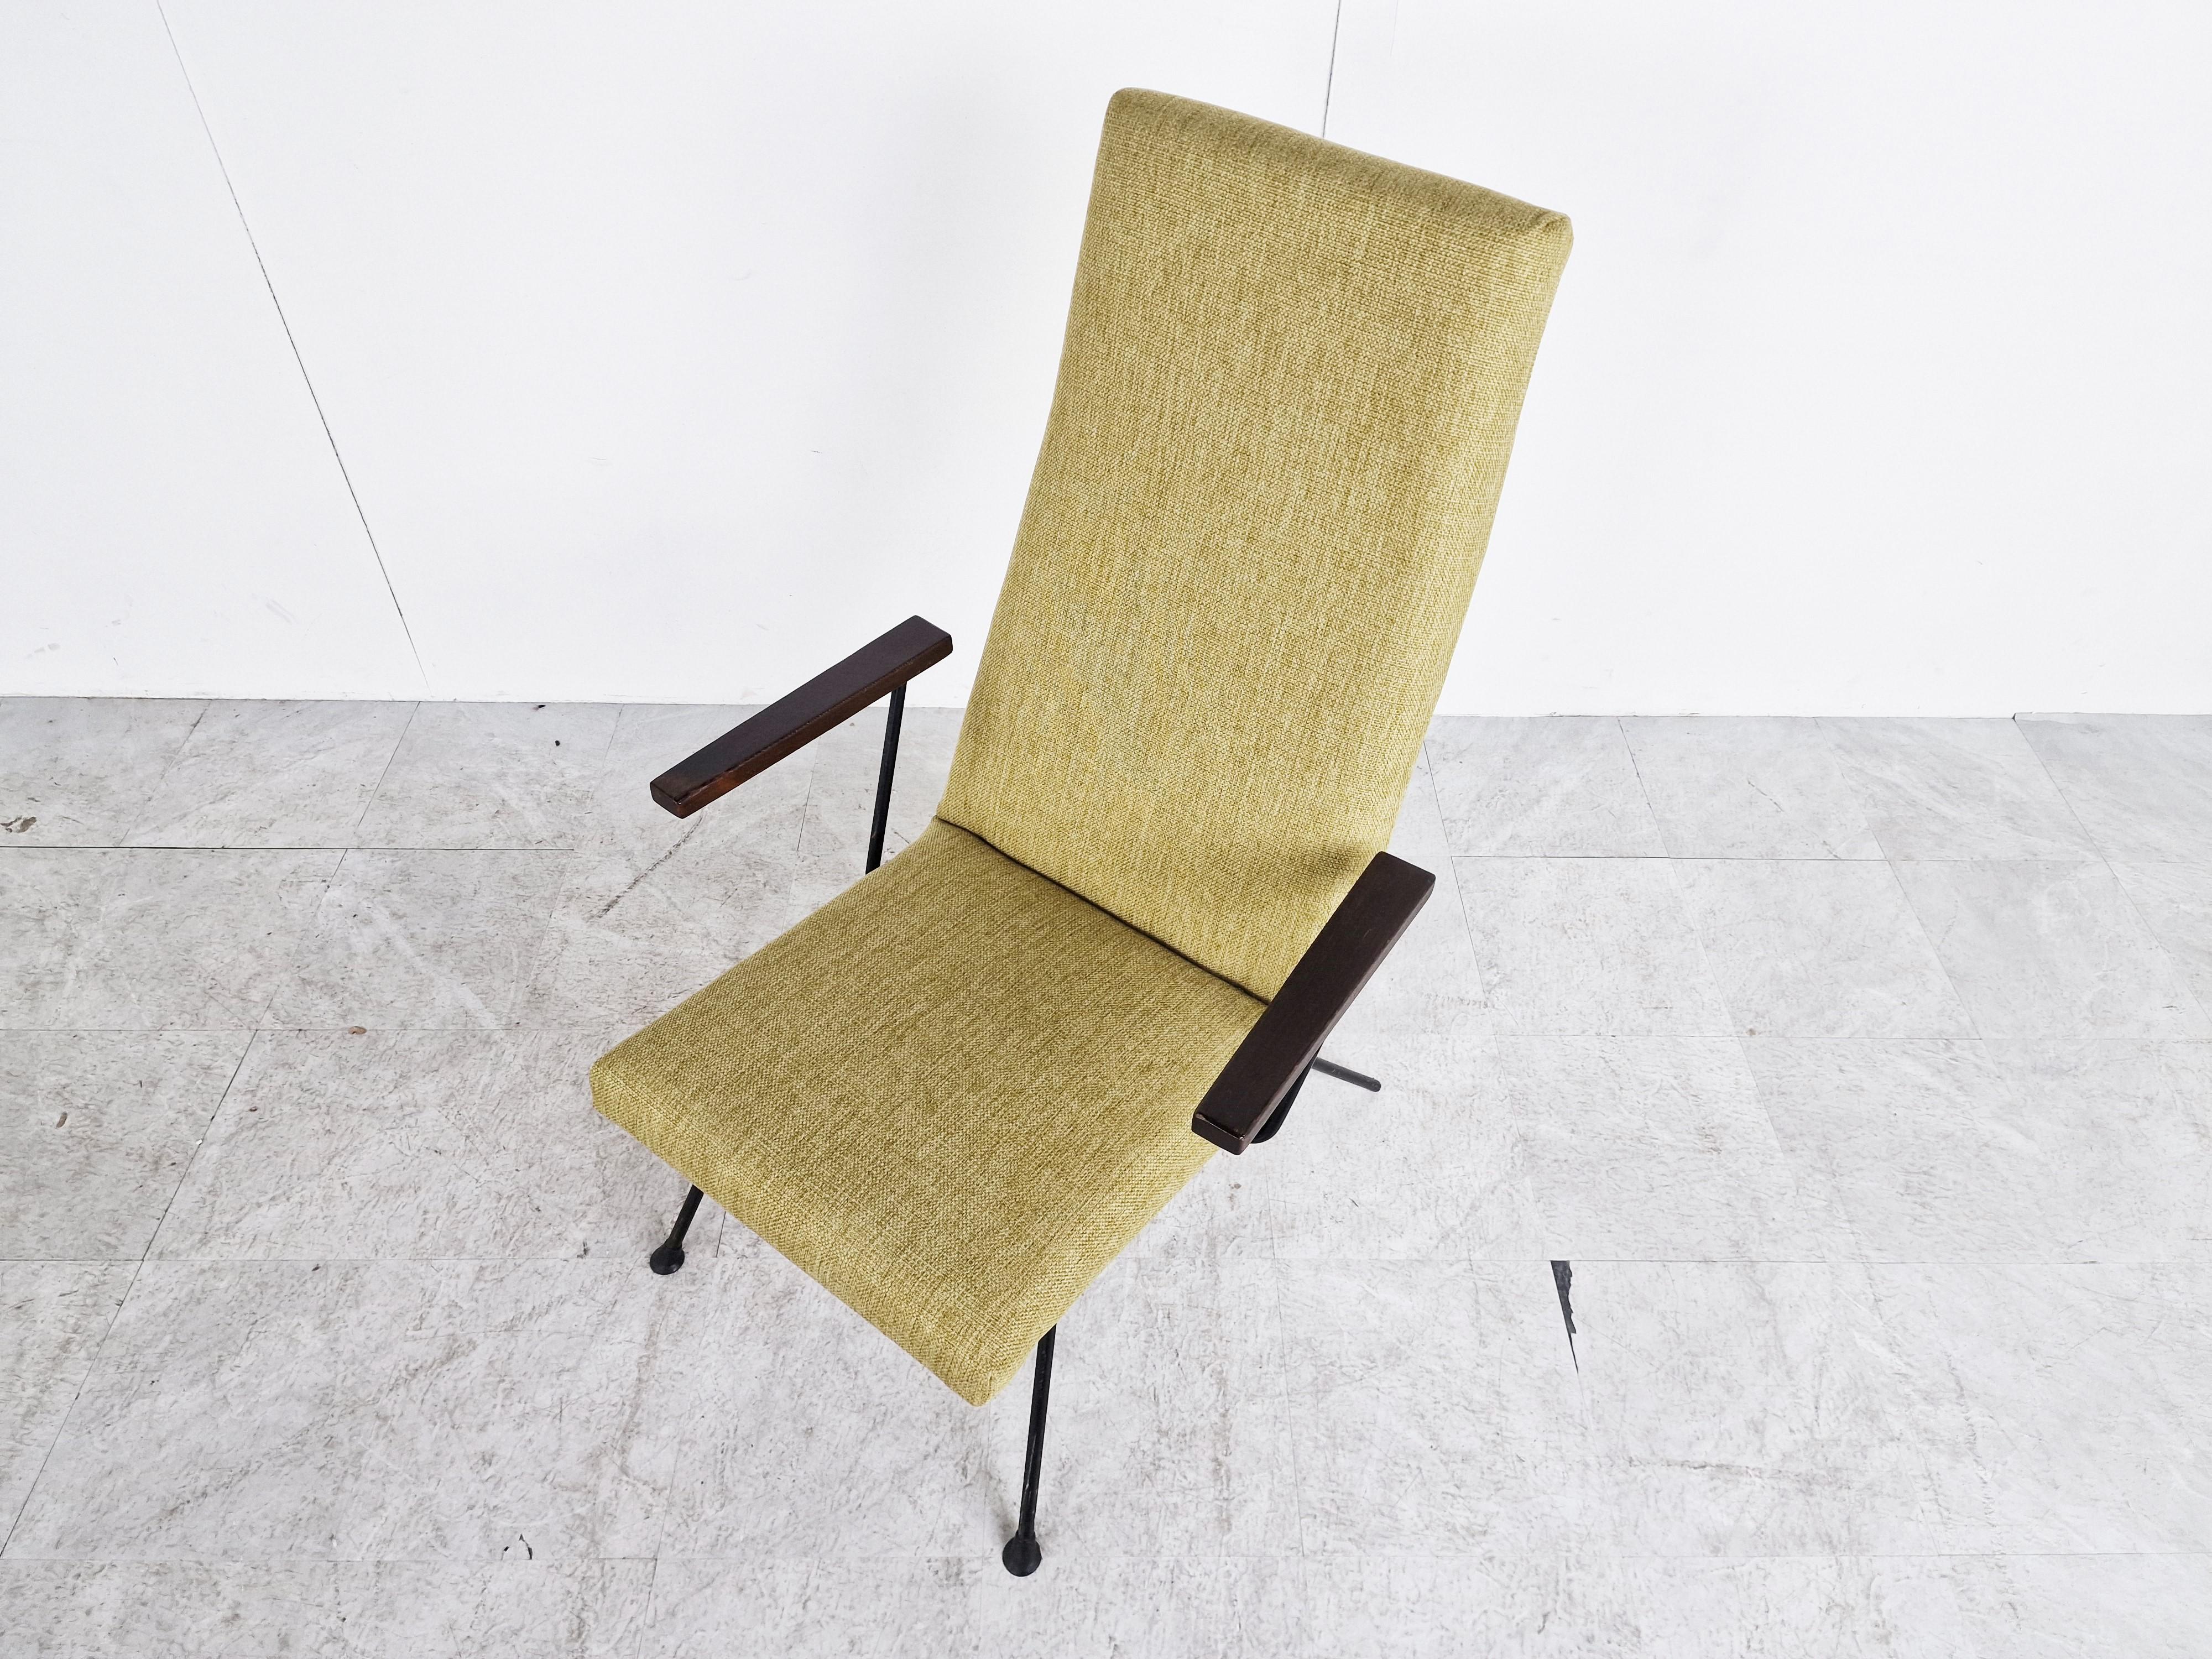 Eleganter Mid-Century-Modern-Sessel, entworfen von André Cordemeyer für Gispen in den 1950er Jahren.

Das schöne, schlichte und elegante Design wird nie alt.

Neu gepolstert mit grünem Stoff unter Wahrung des authentischen